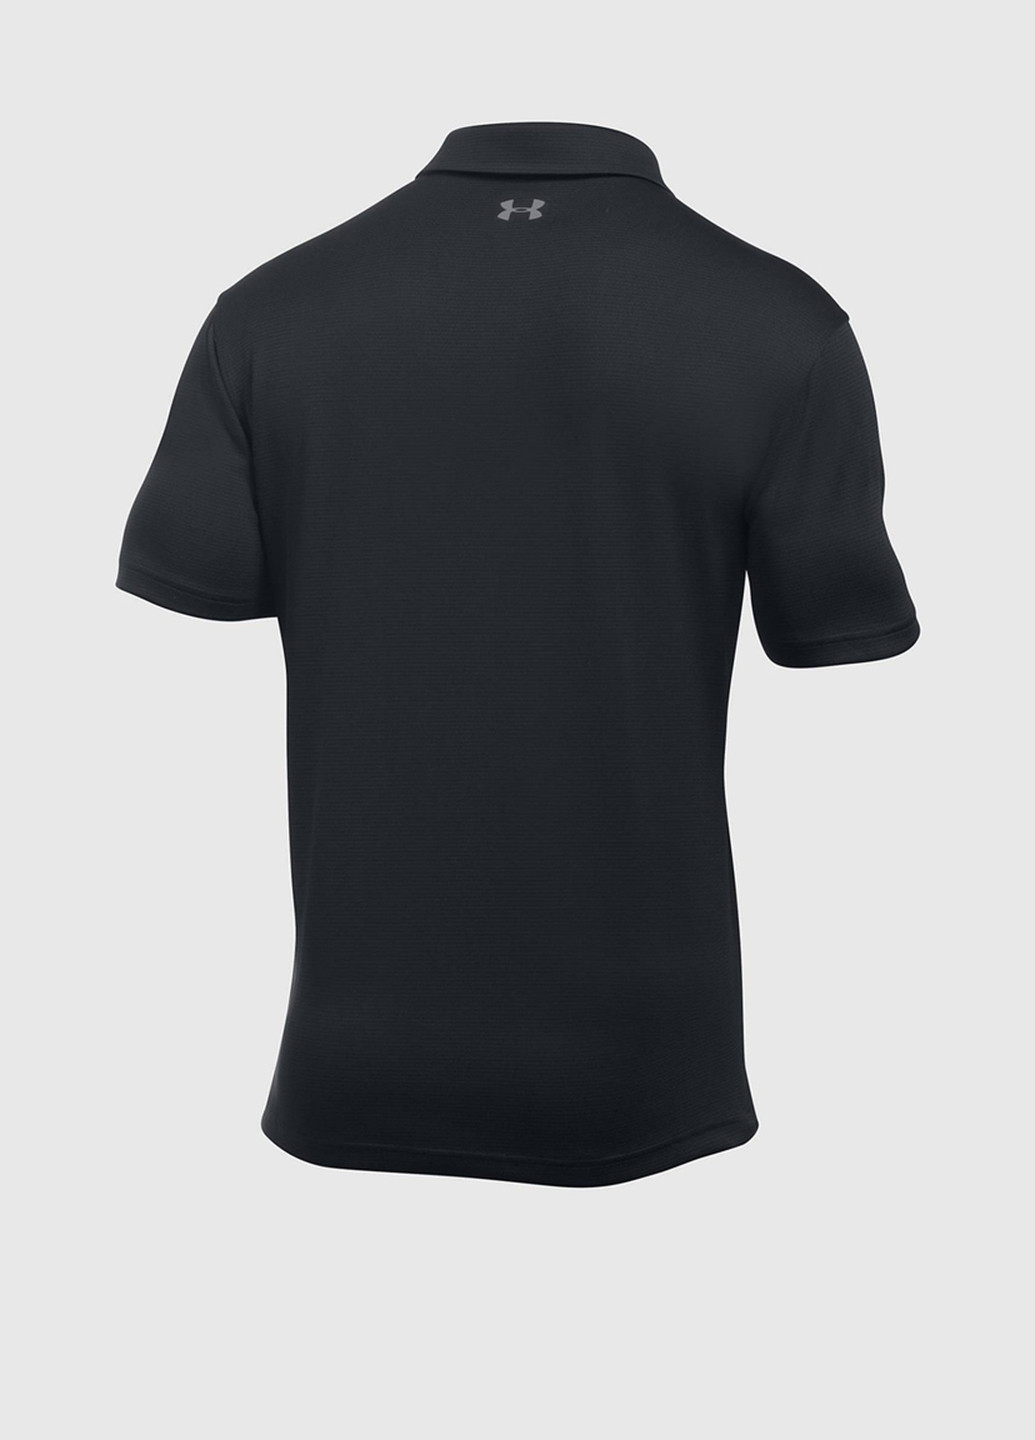 Черная футболка-поло для мужчин Under Armour с логотипом